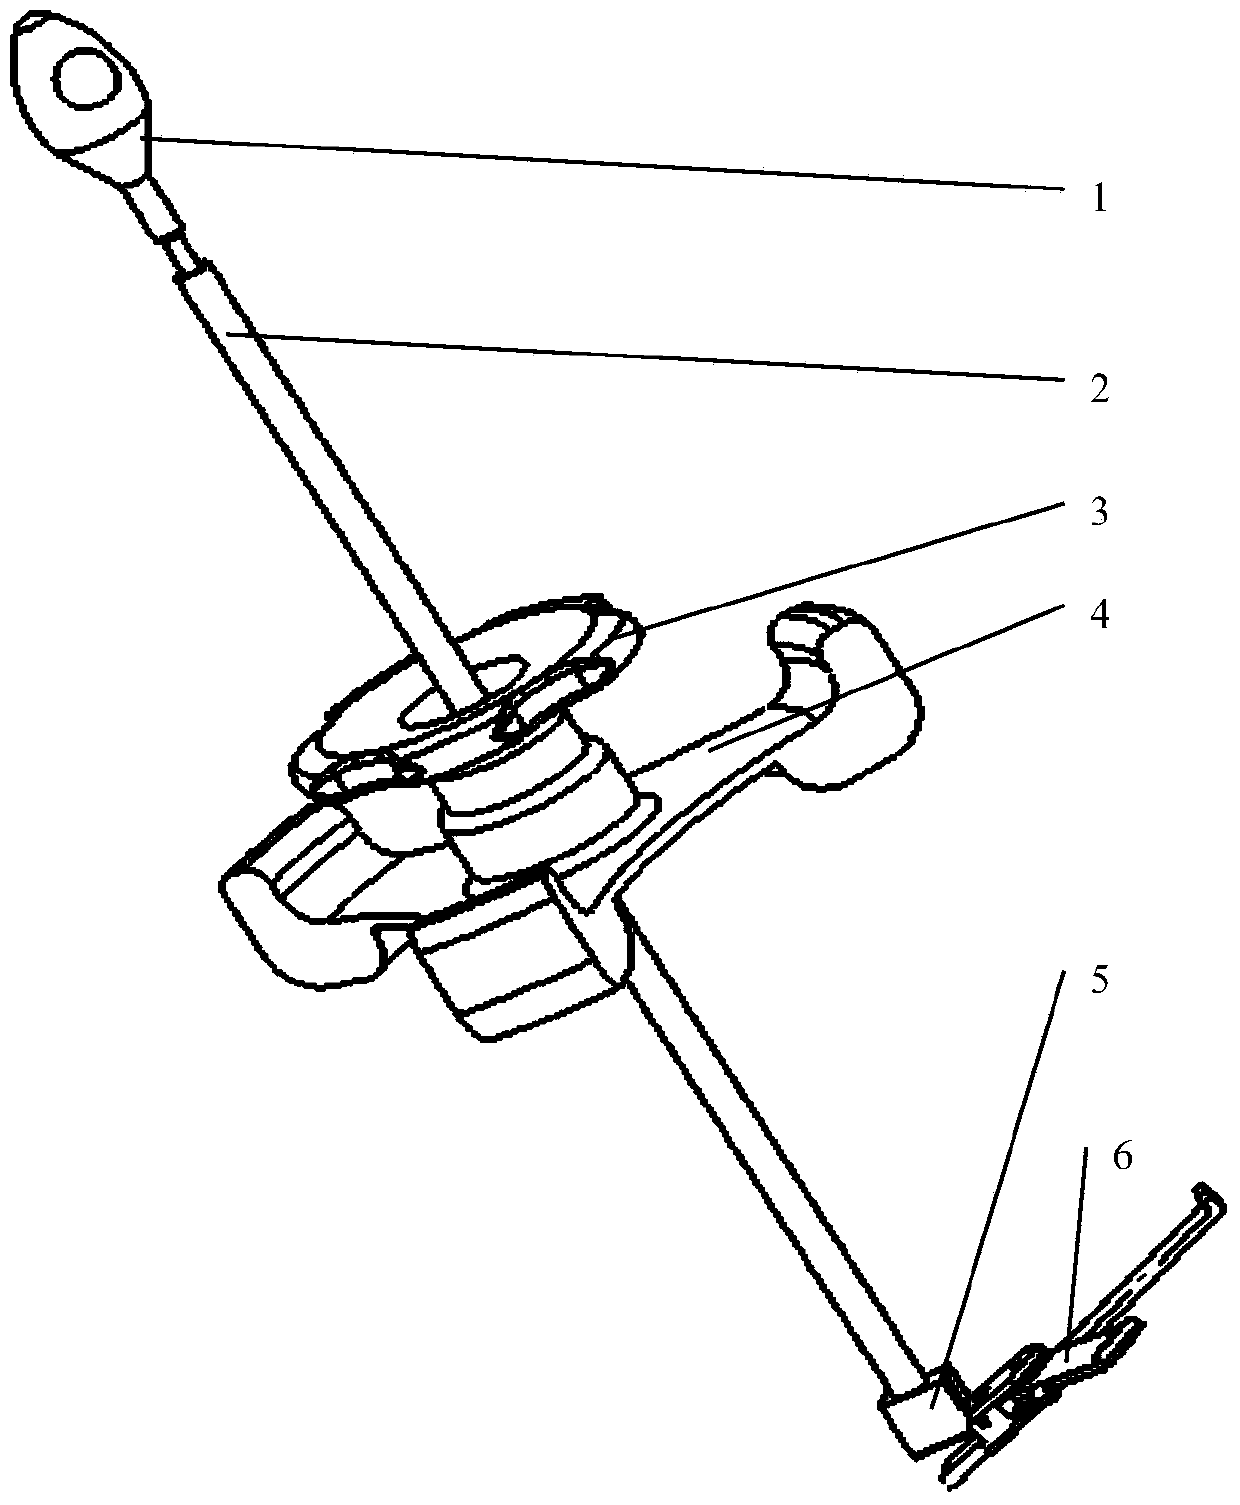 Minimally invasive mitral valve retractor